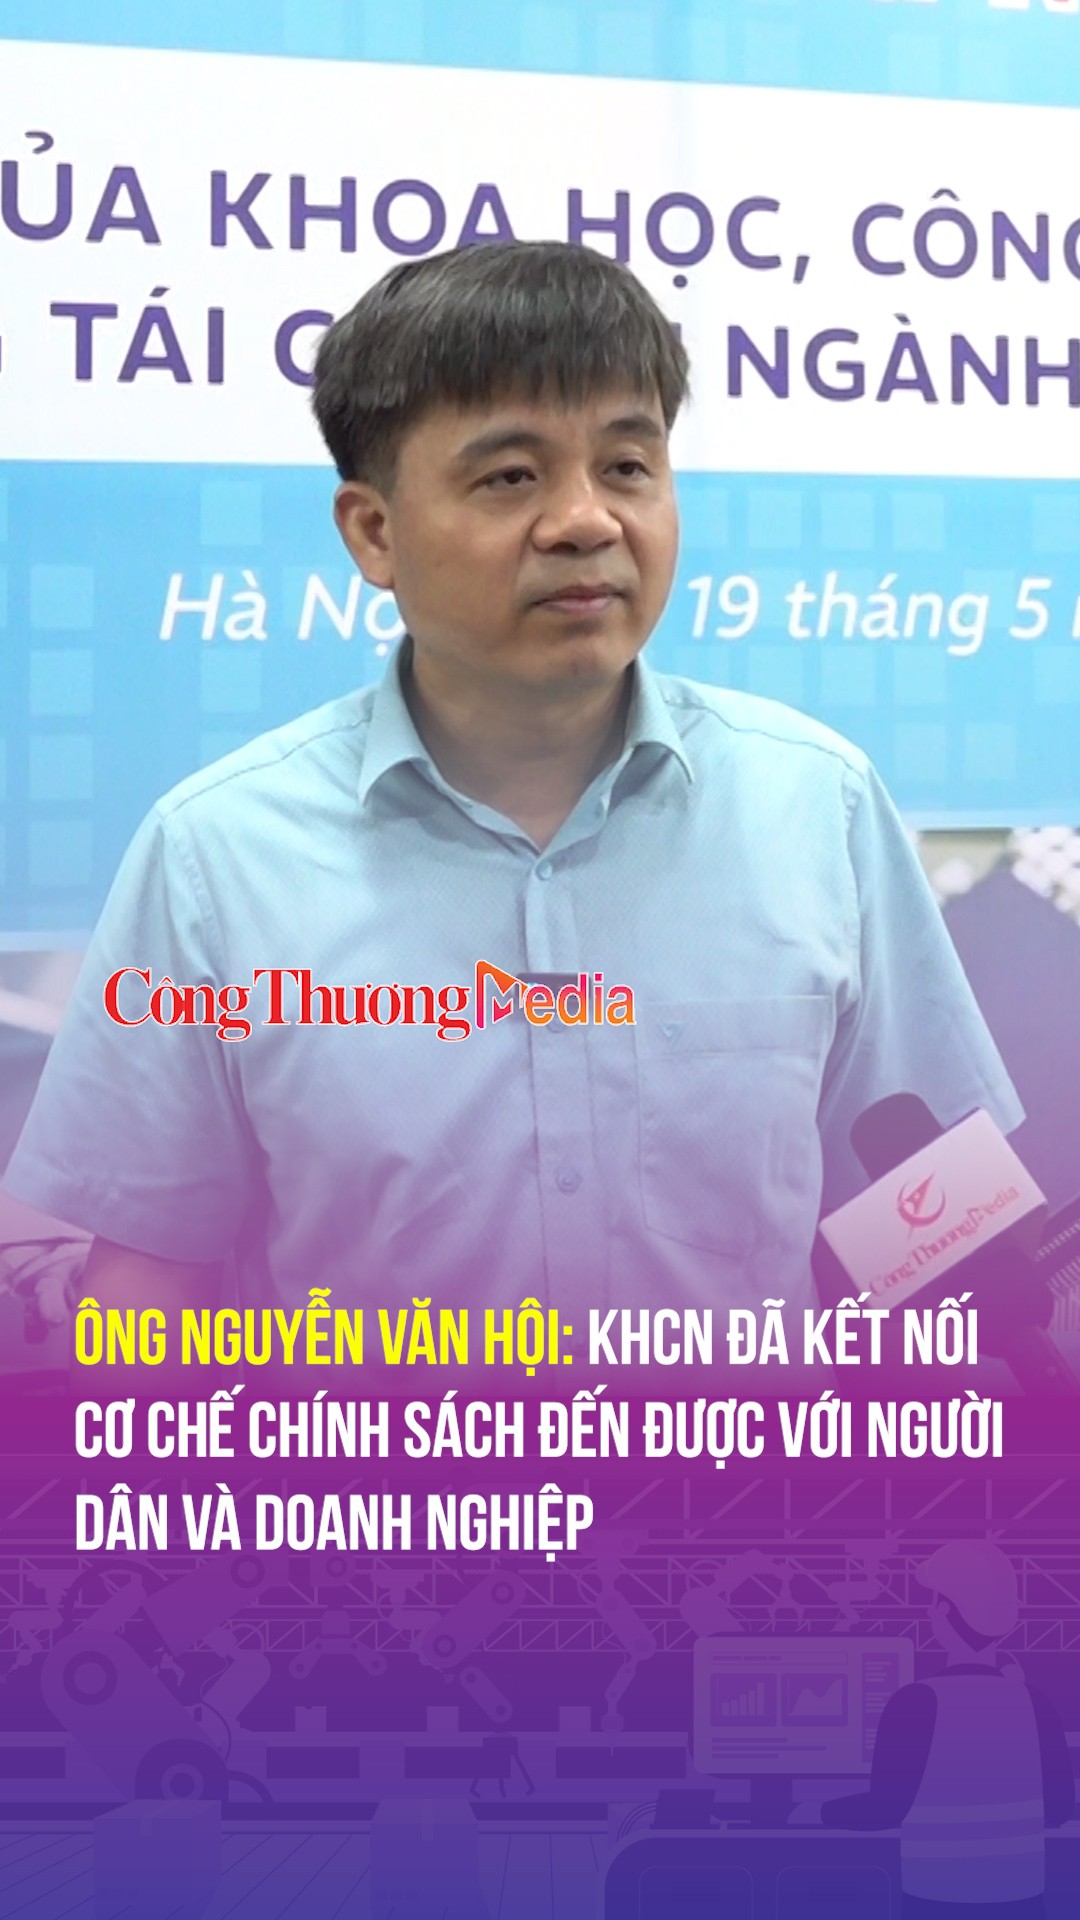 Ông Nguyễn Văn Hội: KHCN đã kết nối cơ chế chính sách đến được với người dân và doanh nghiệp